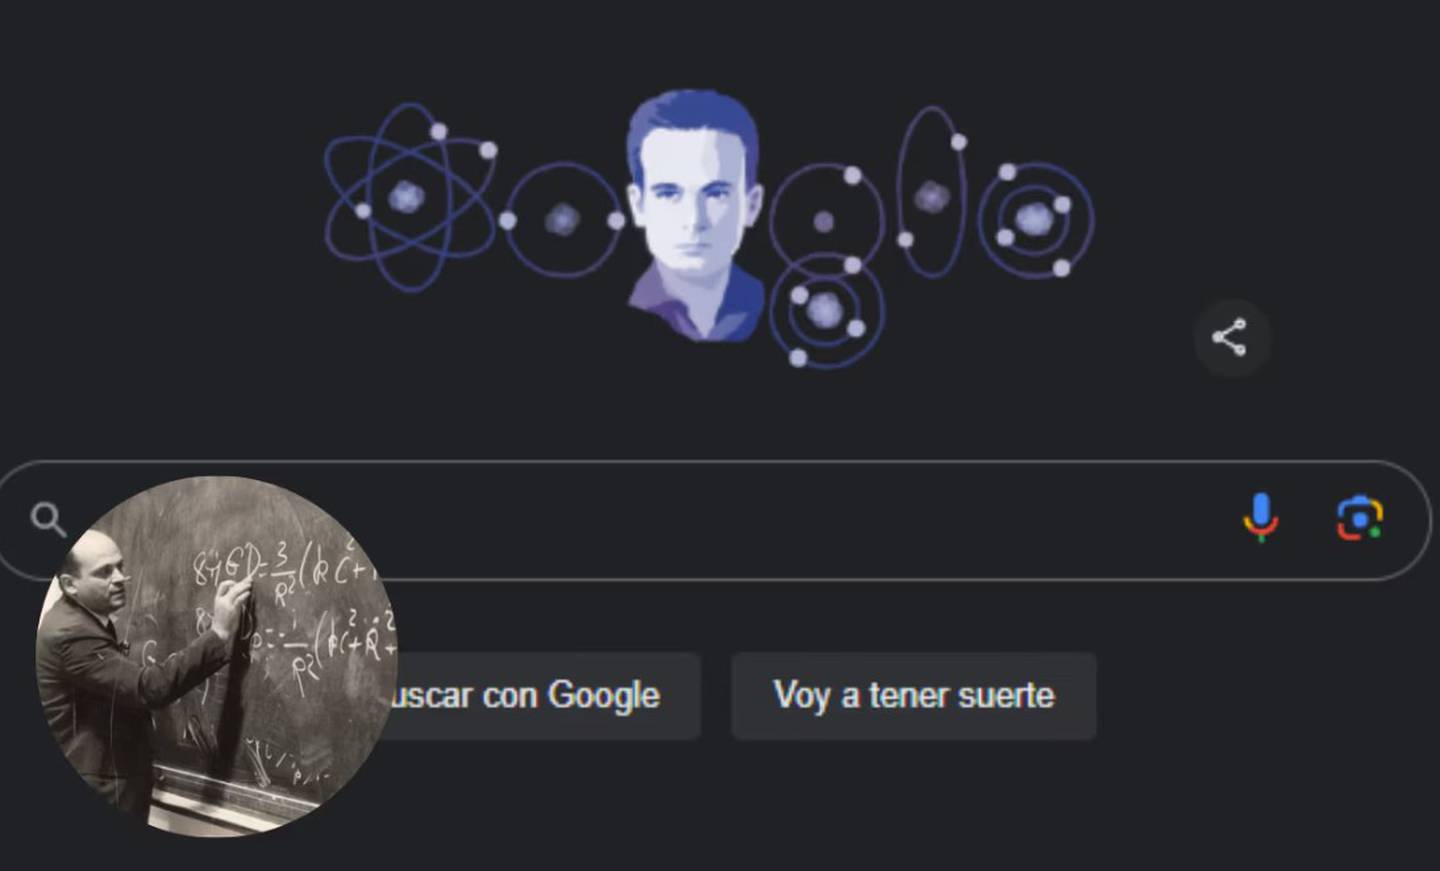 Google celebra a César Lattes con un Doodle especial, destacando su aporte al descubrimiento de los piones y su legado en la física.